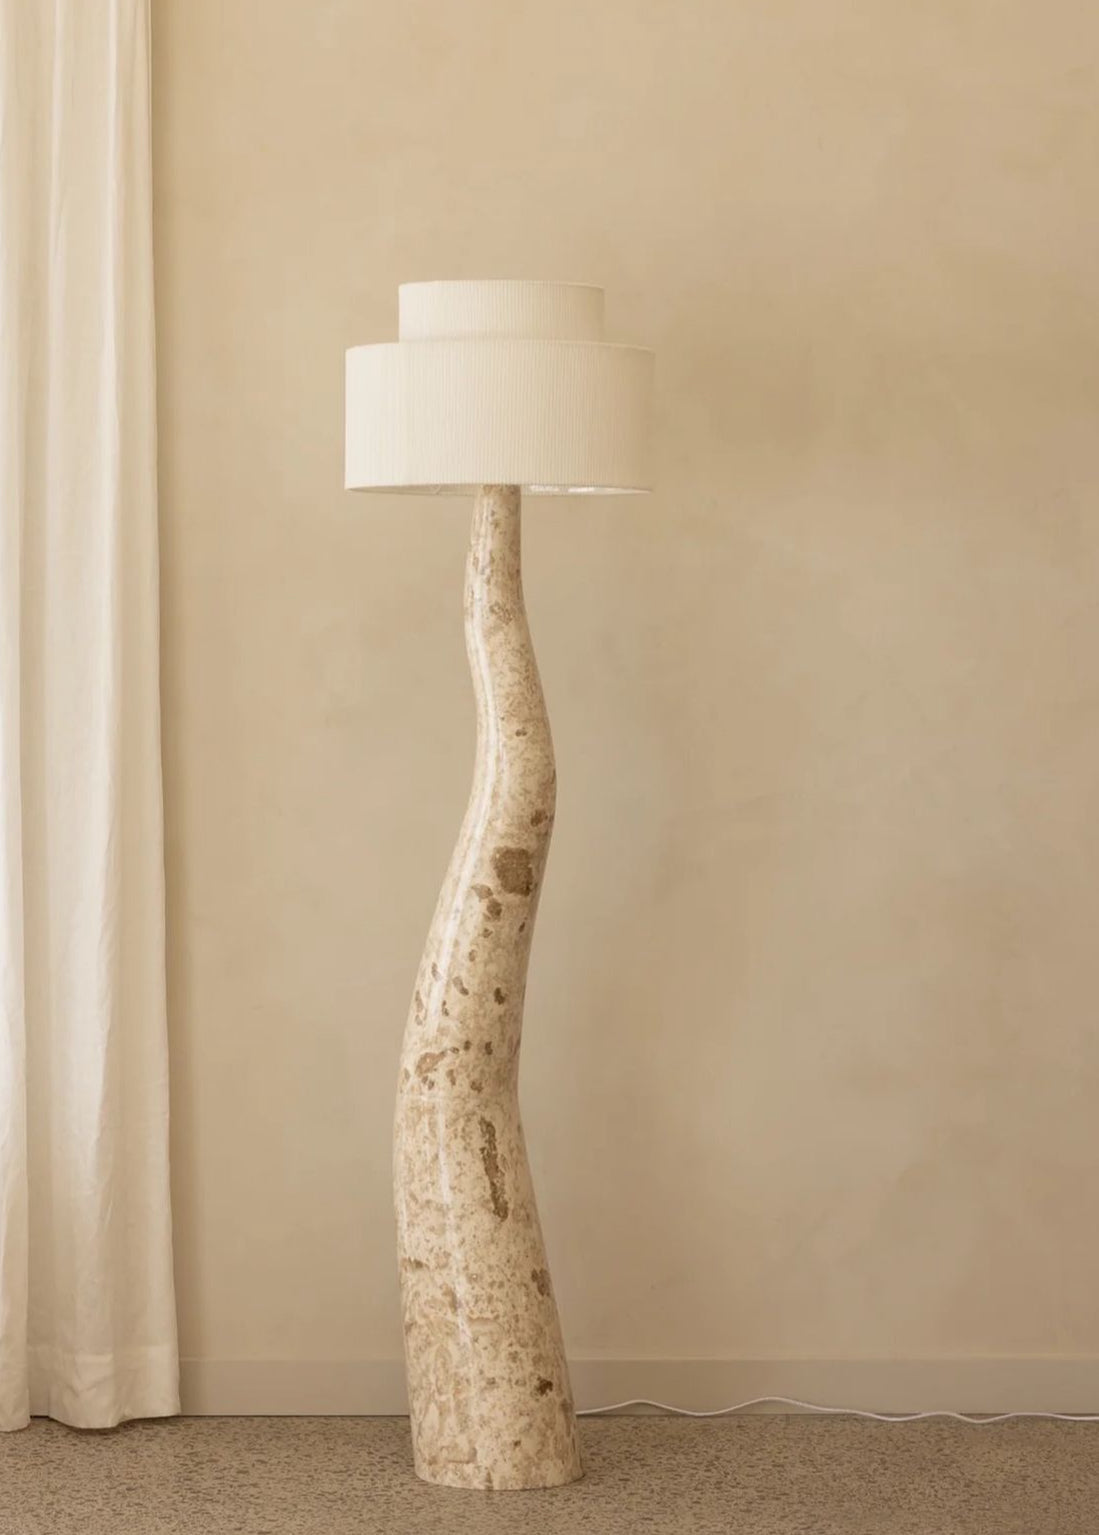 Spanish Designer Resin And Cloth Floor Lamp - Warm Ambient Light Unique Sculptural Design - Minimalist Floor Lamps